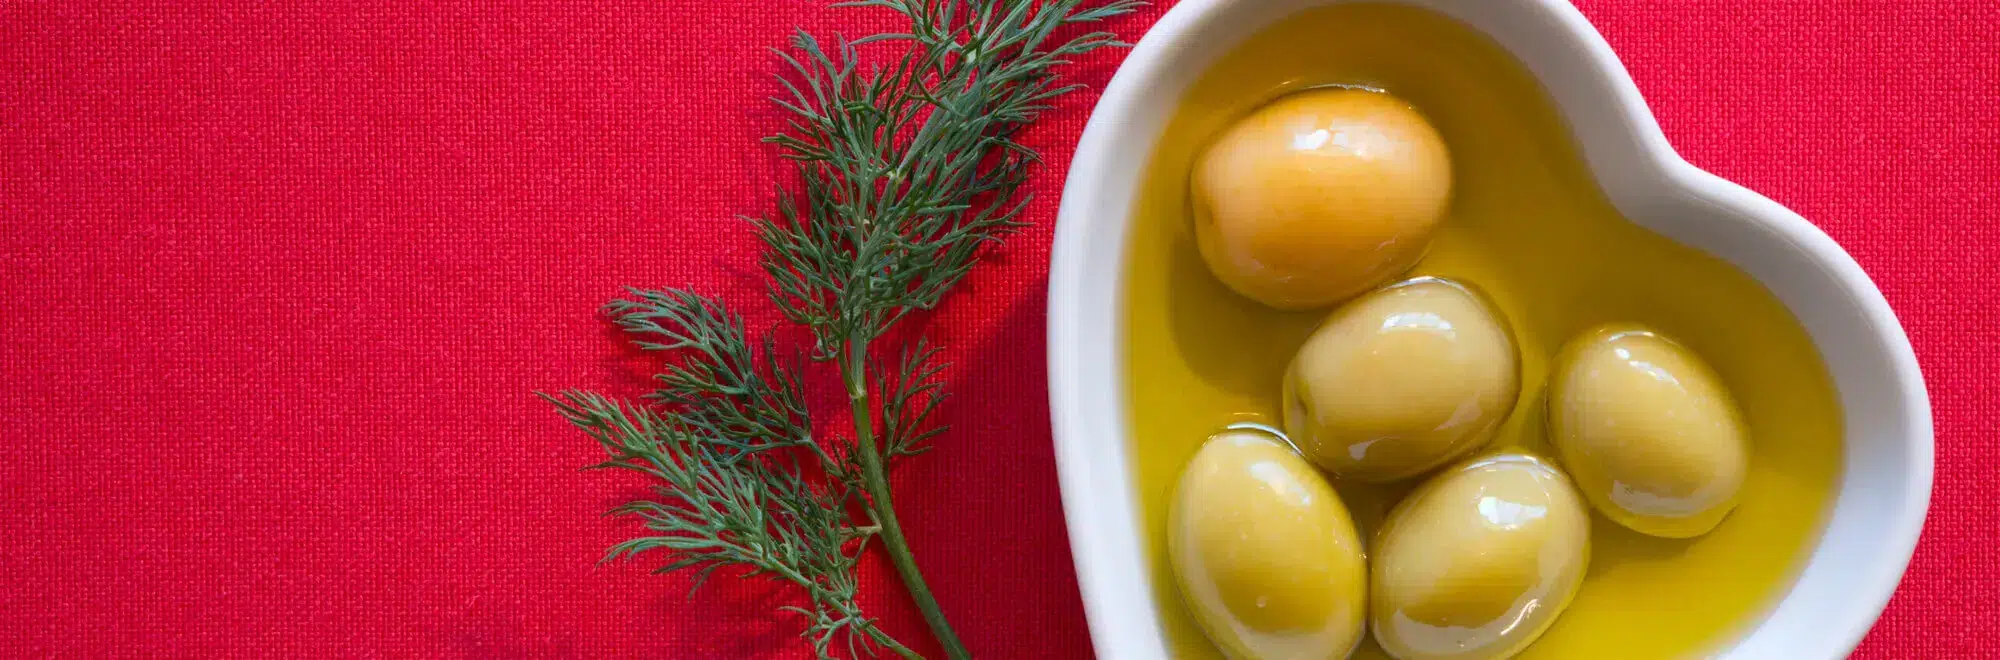 ¿Cómo reducir el colesterol elevado con aceite de oliva?